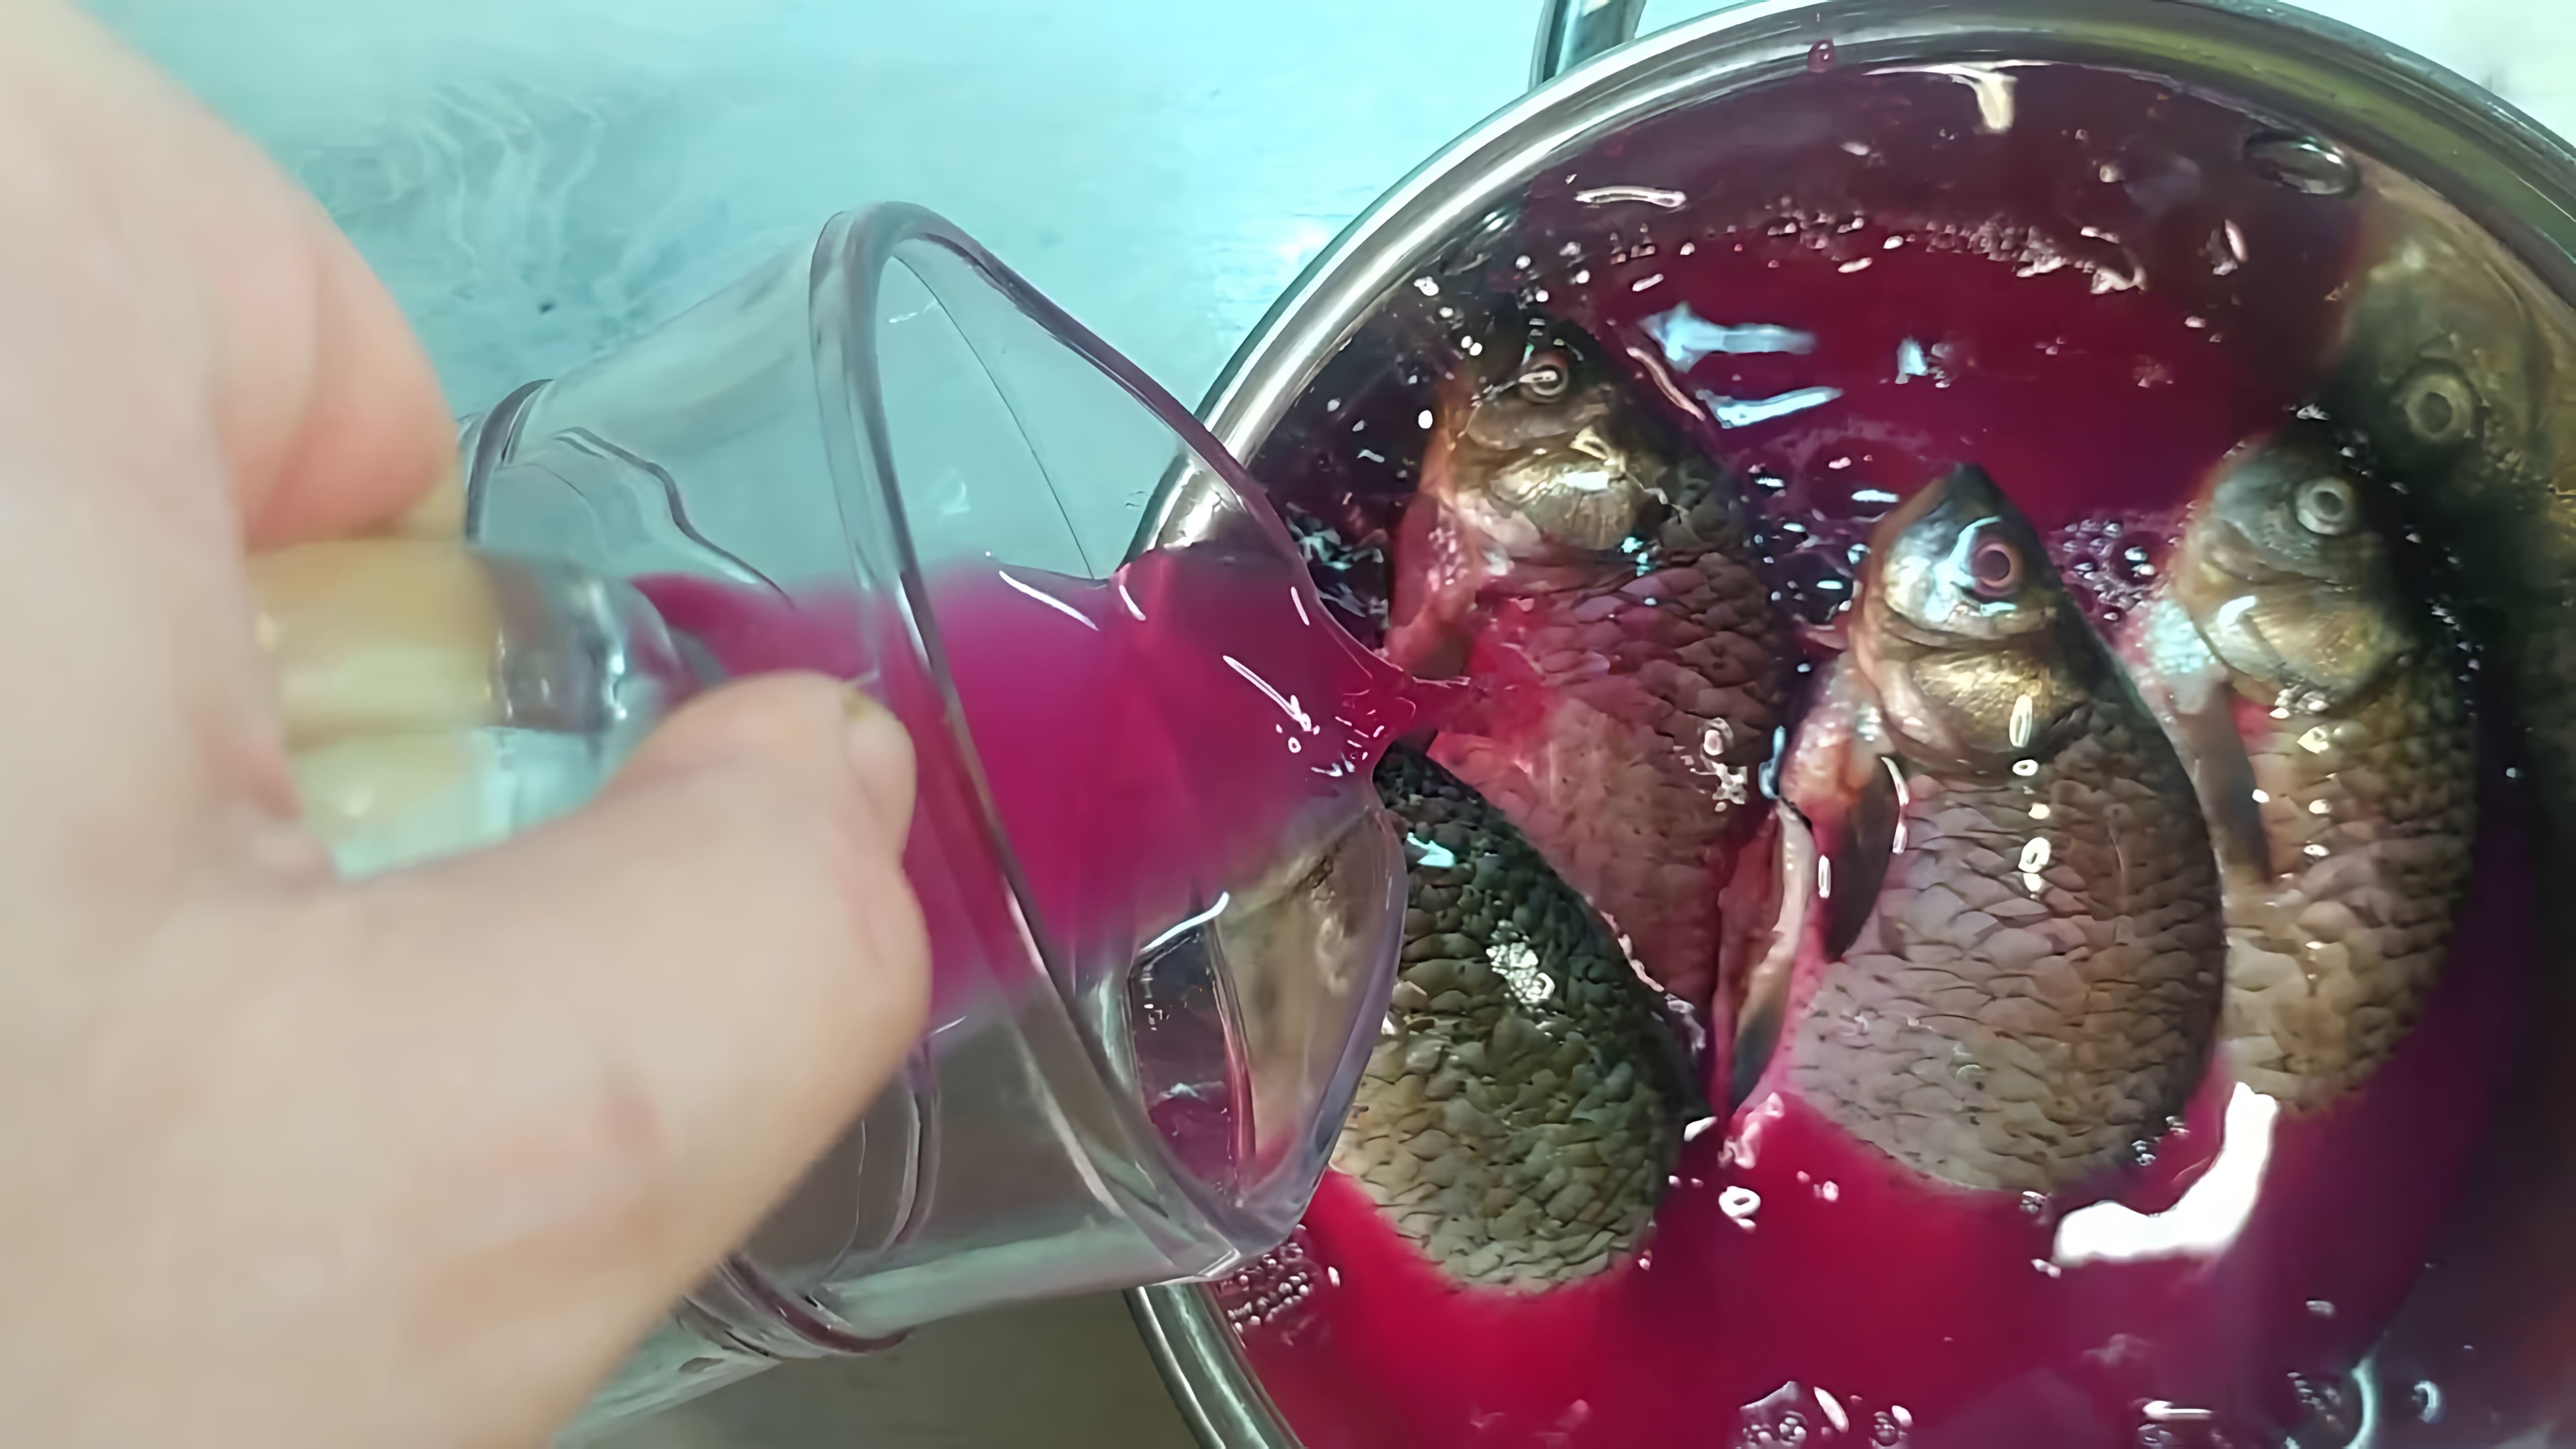 В данном видео демонстрируется рецепт отварной рыбы, который использовался в прошлом, когда не было супермаркетов и магазинов